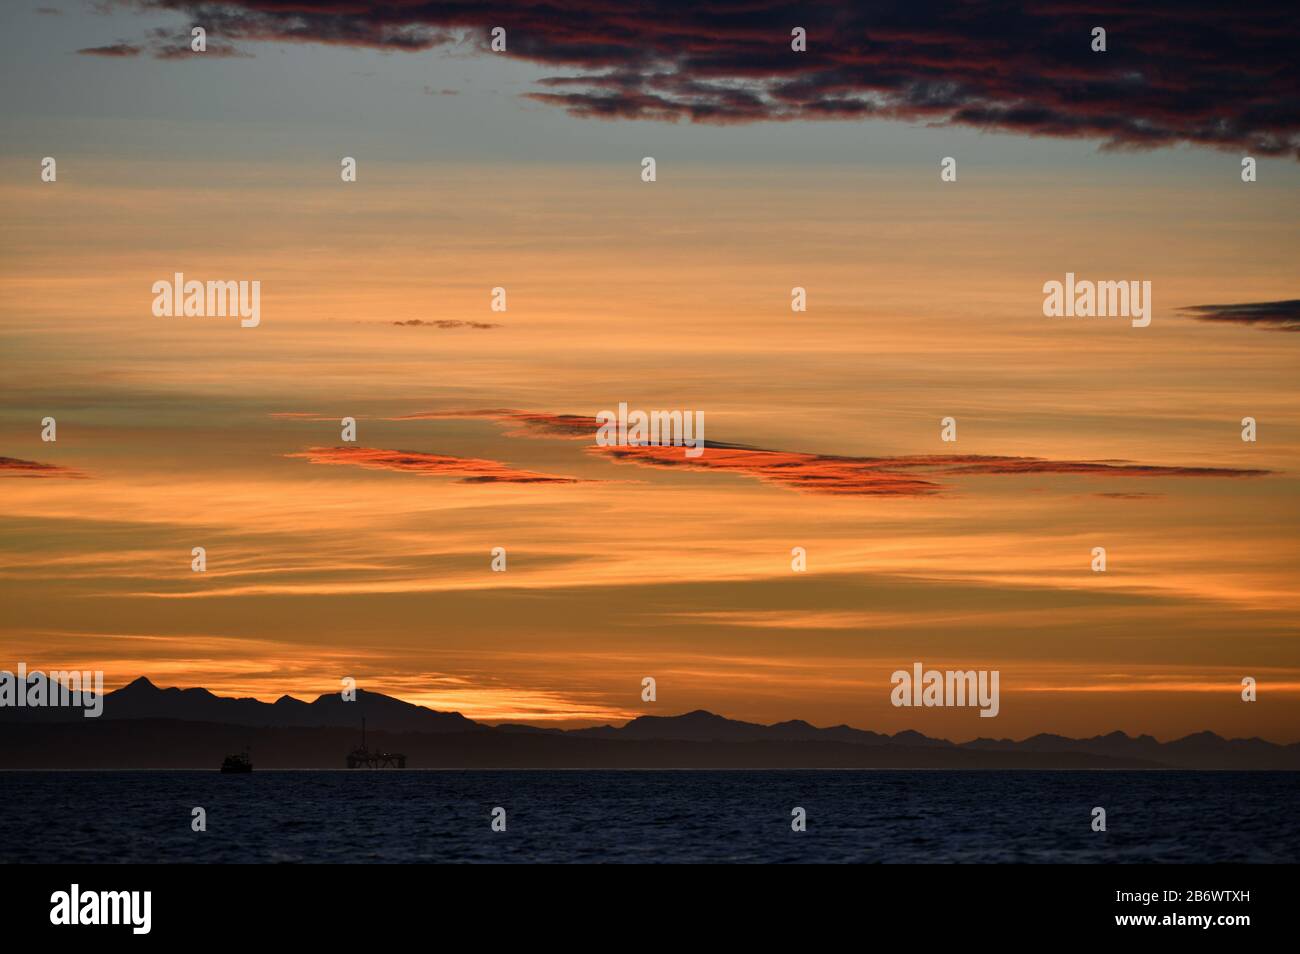 Stagionatura. Cielo rosso all'alba, piattaforma di perforazione a olio iт Baia di Mossel, silhouette di montagne all'orizzonte. Sudafrica. Foto Stock